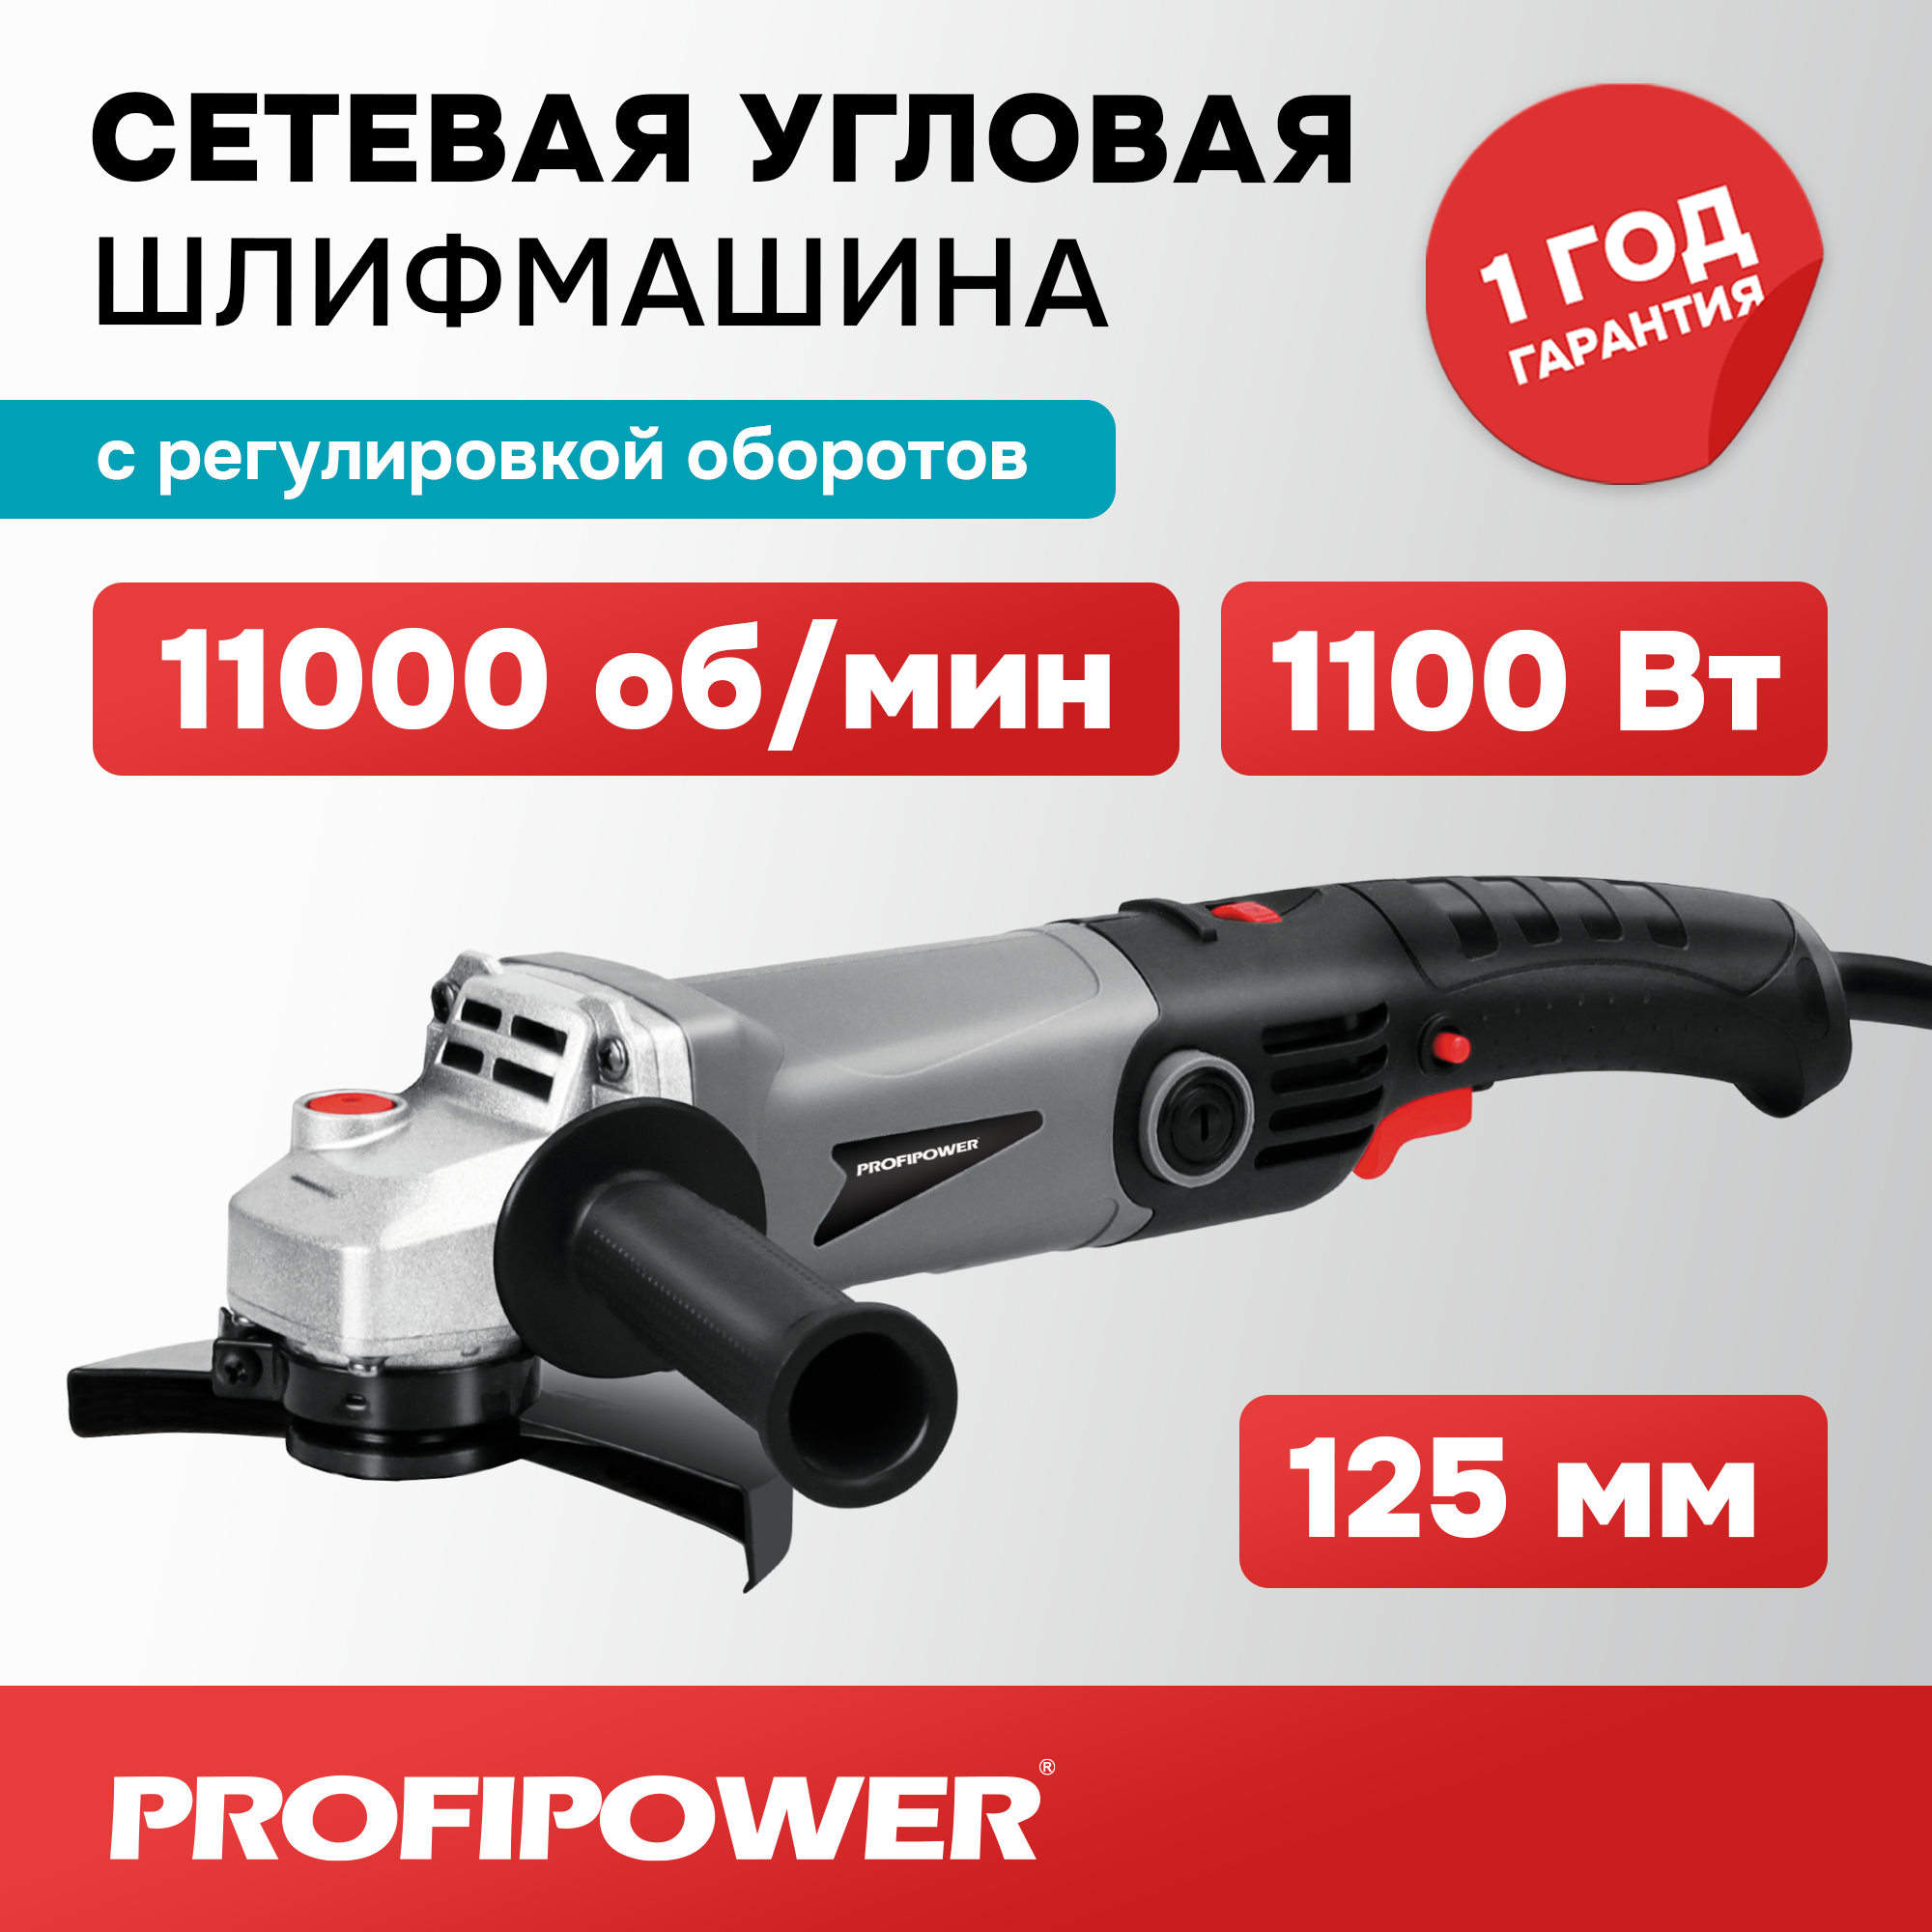 Сетевая УШМ (болгарка) Profipower PGS-1200R (1100 Вт 125мм 11000 об/мин с регулировкой оборотов)